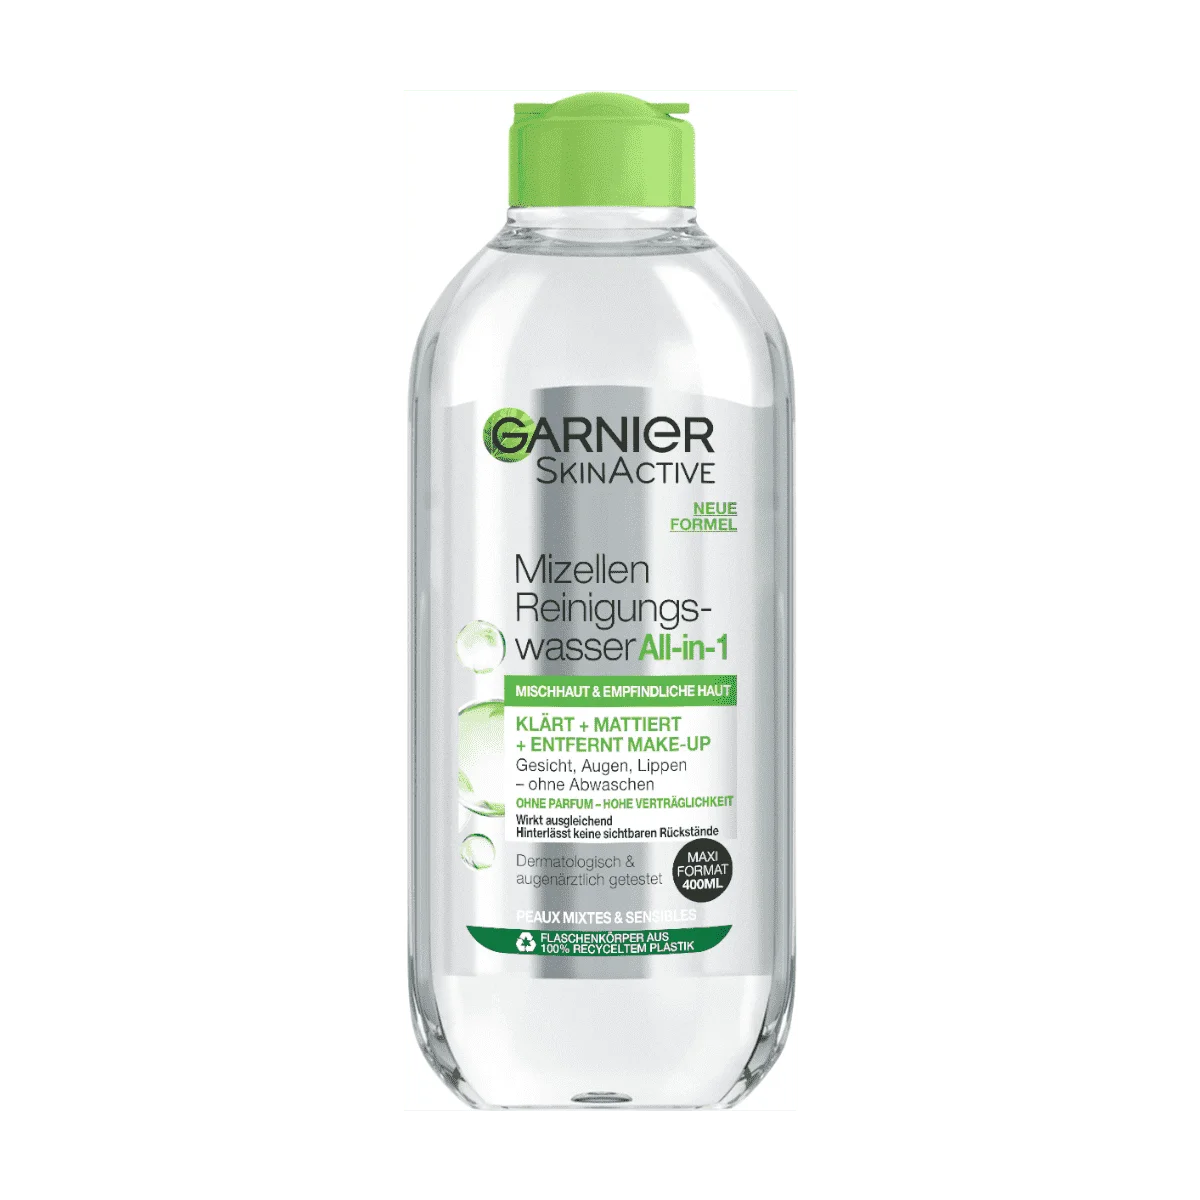 Garnier SkinActive Mizellen Reinigungswasser, Mischhaut & Empfindliche Haut, 400 ml